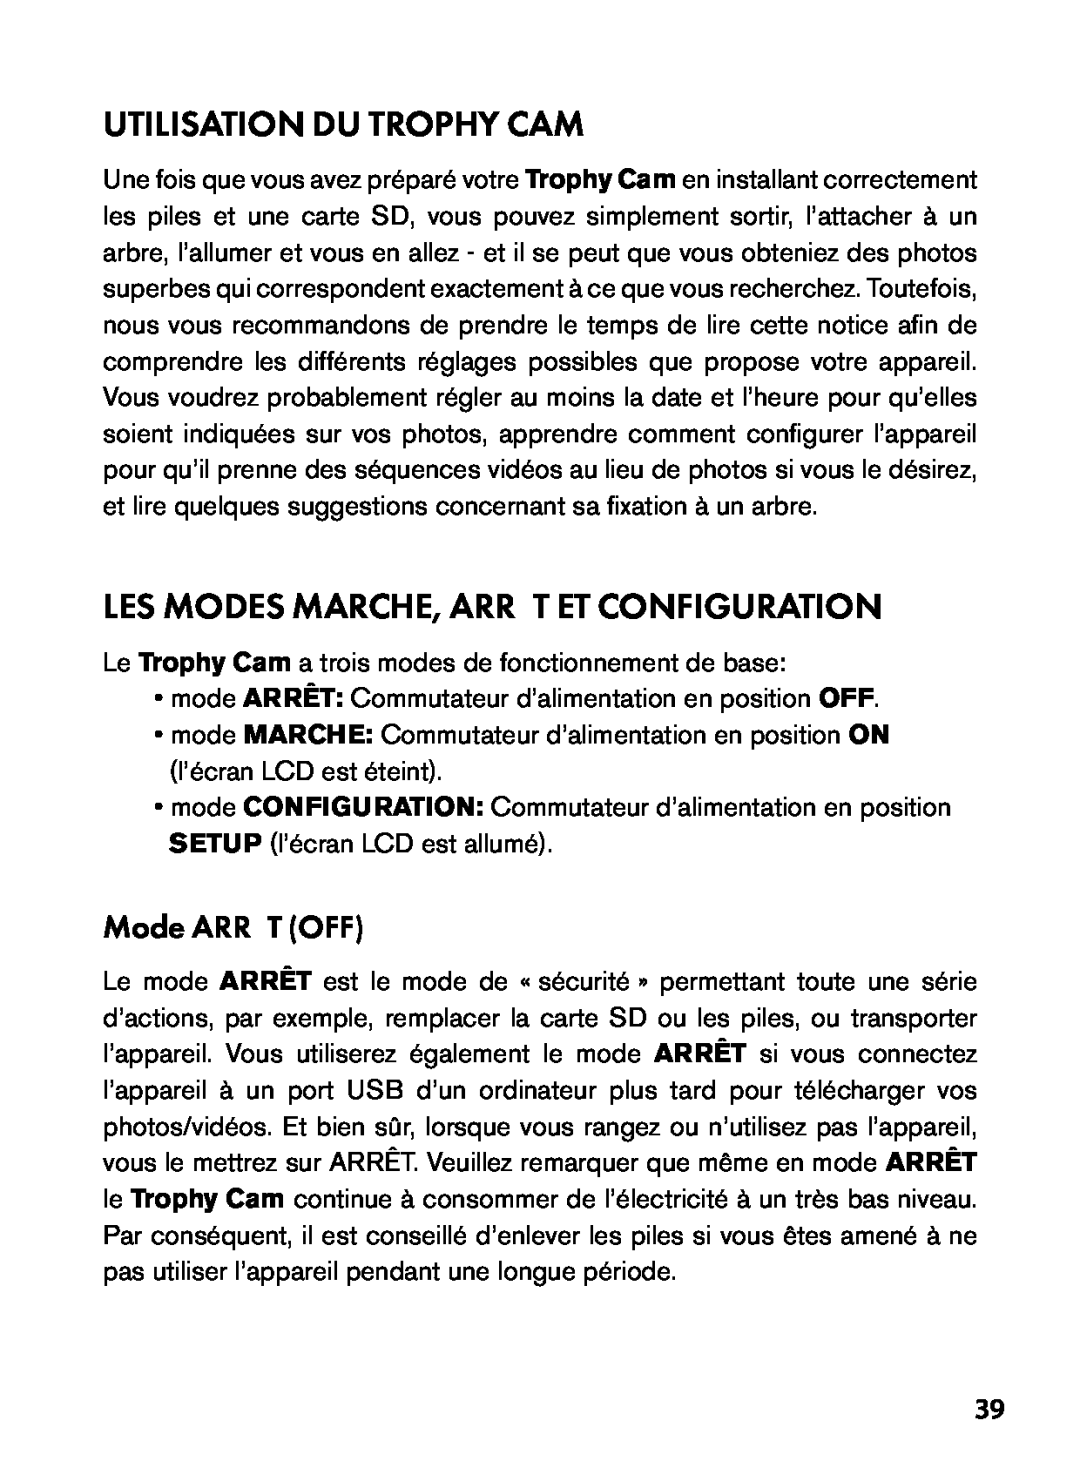 Bushnell 119455, 119445, 119435 Utilisation Du Trophy Cam, Les Modes Marche, Arrêt Et Configuration, Mode ARRÊT OFF 